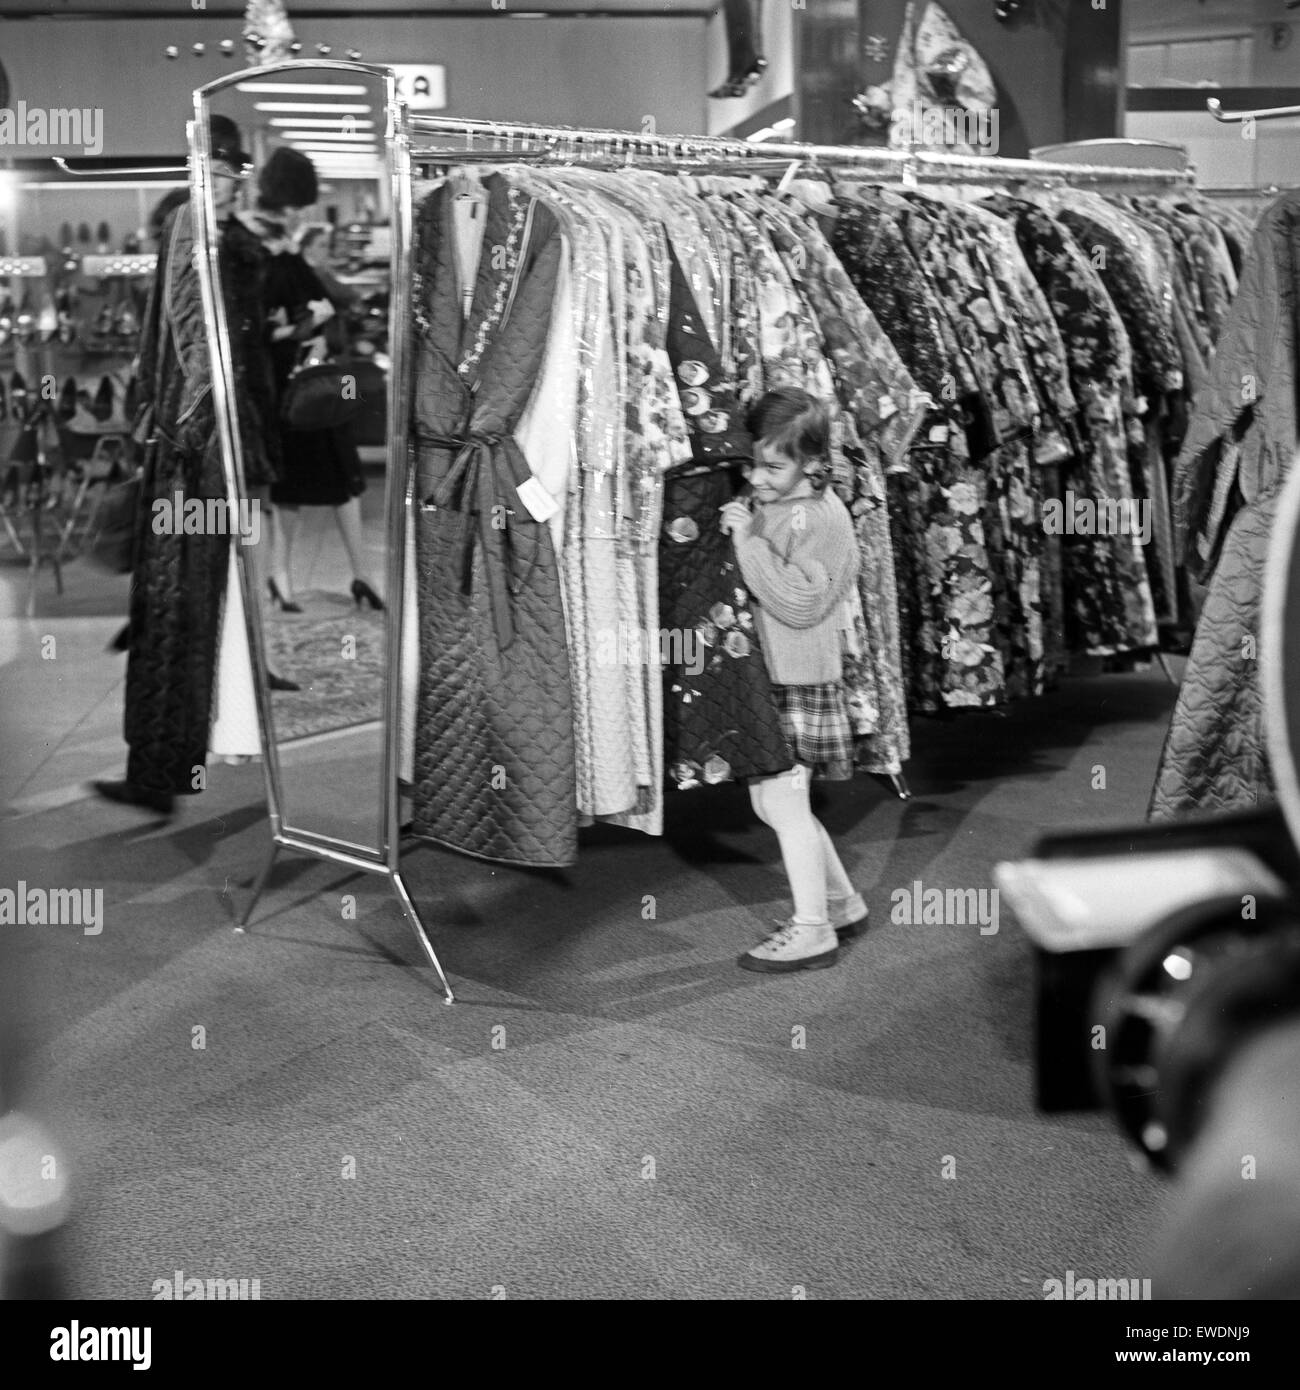 Sozialdrama Wilhelmsburger Freitag, Deutschland, 1964, Regie : Egon Monk, Szenenfoto in der Damenoberbekleidung Banque D'Images